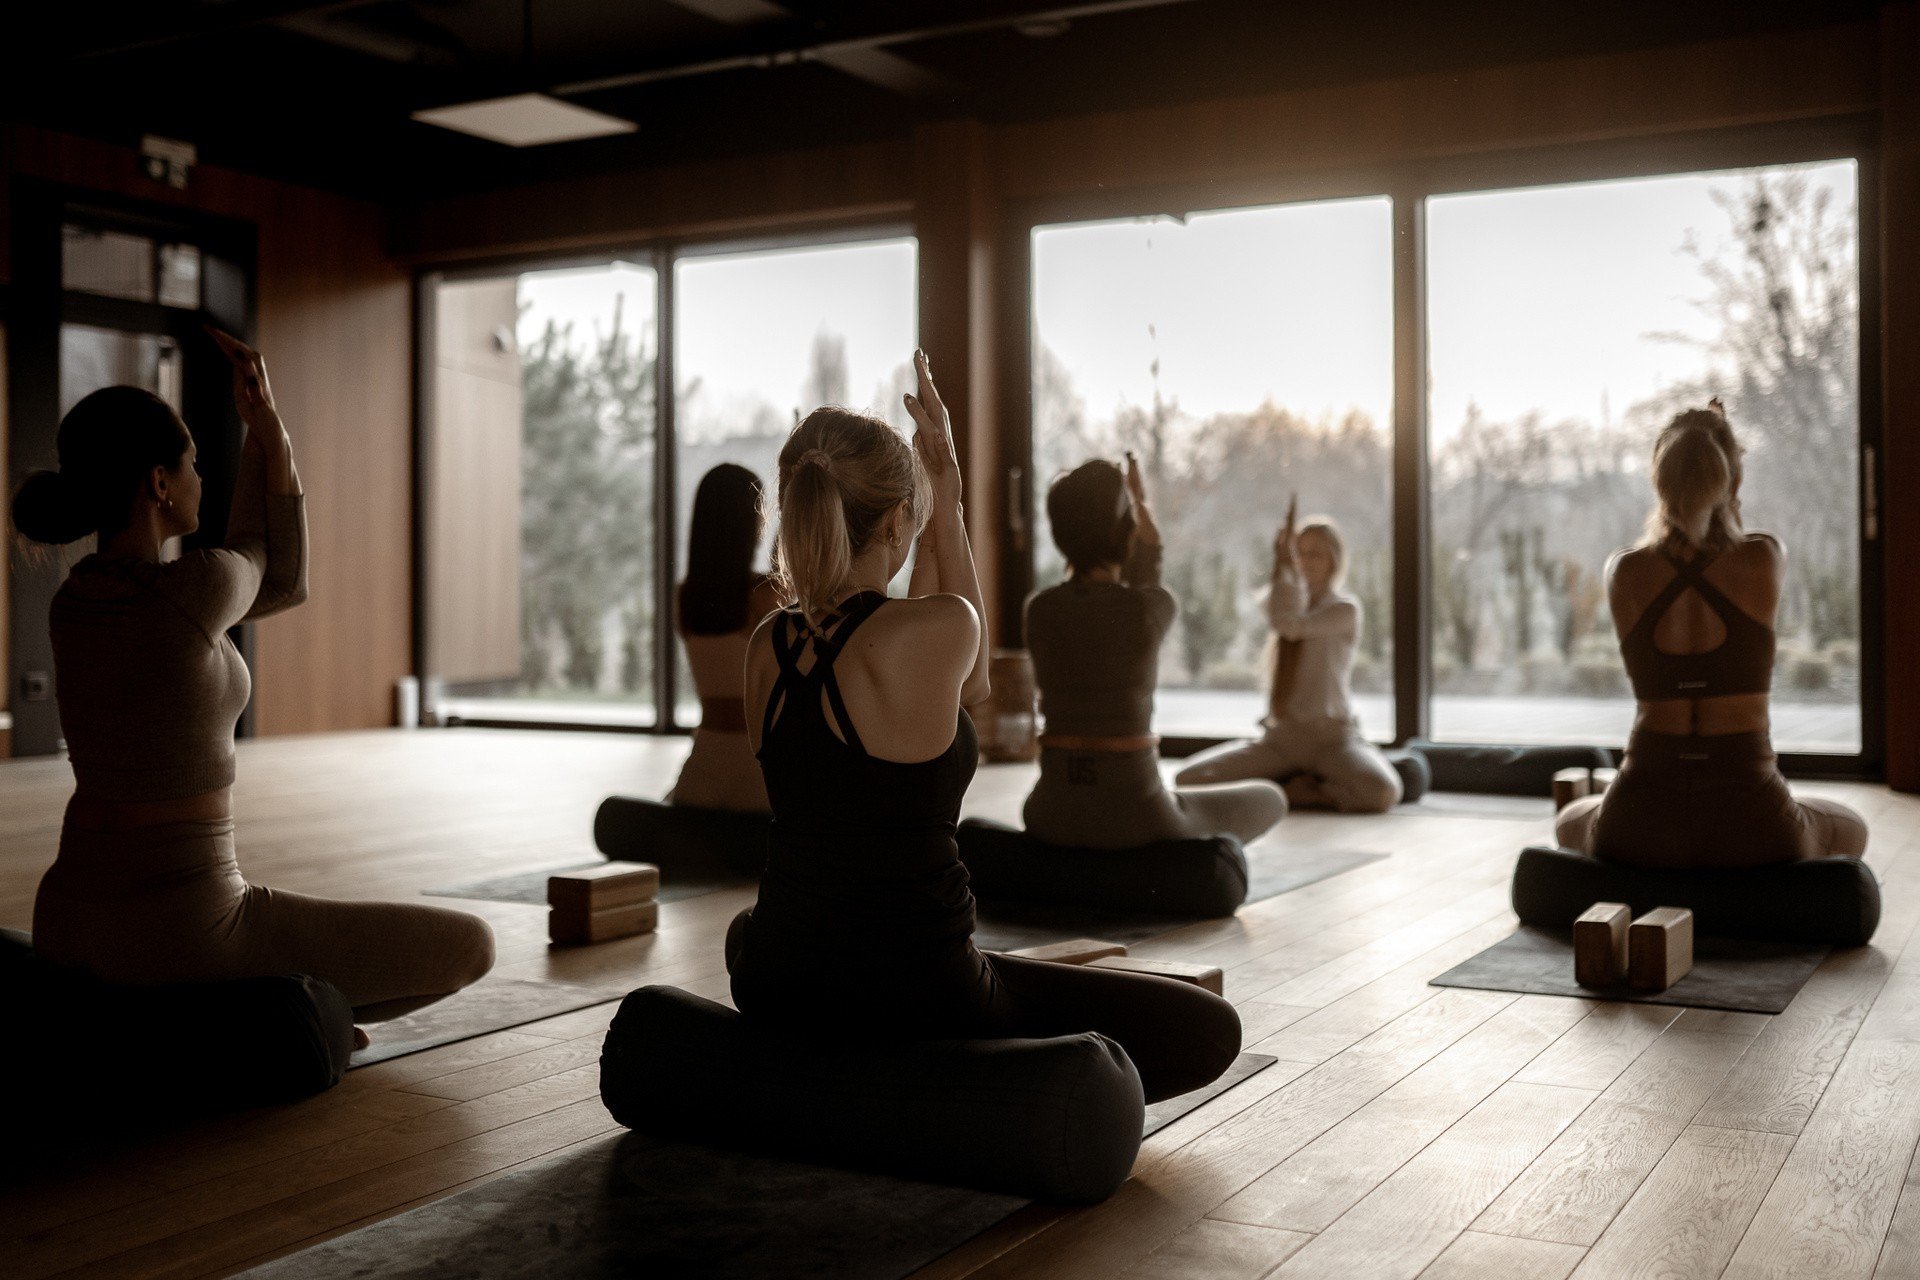 Semana de la mujer, es decir, clases de yoga gratuitas en Sopot.  Es una buena manera de relajarse y cuidar su salud.  Las inscripciones están en curso